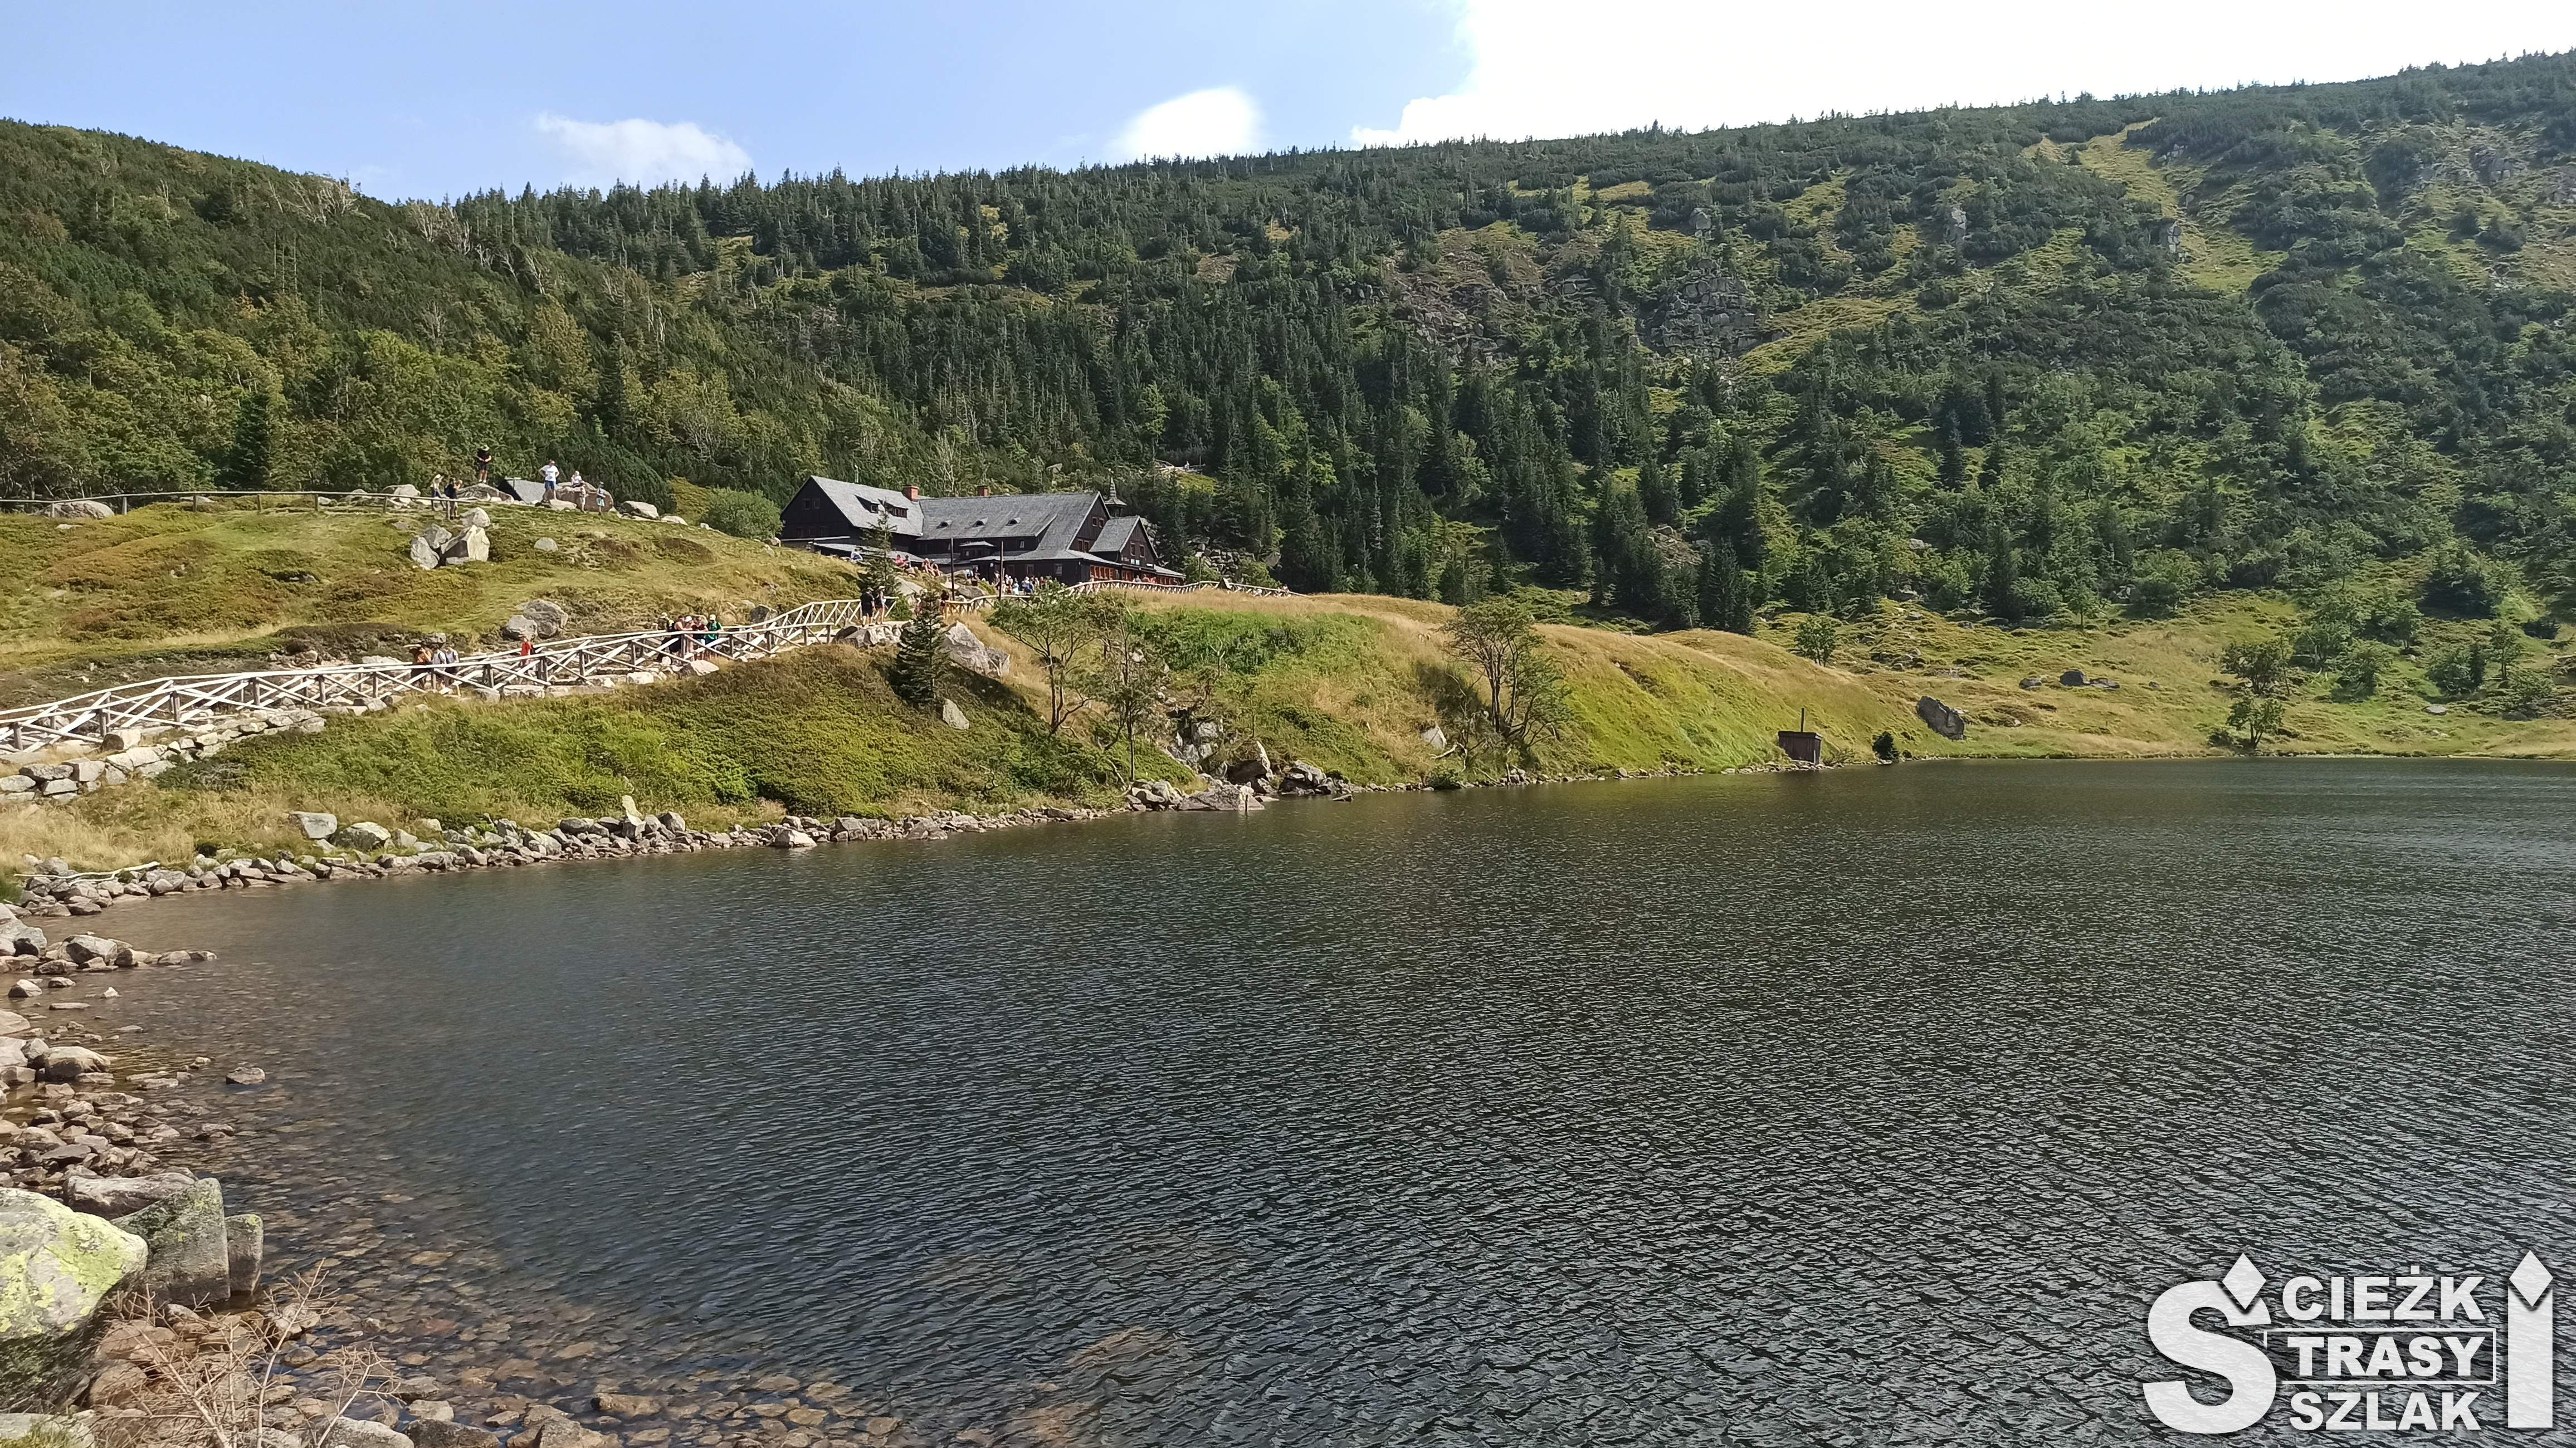 Schronisko Samotnia przy górskim jeziorze Mały Staw położonym z widokiem na góry pokryte zielenią